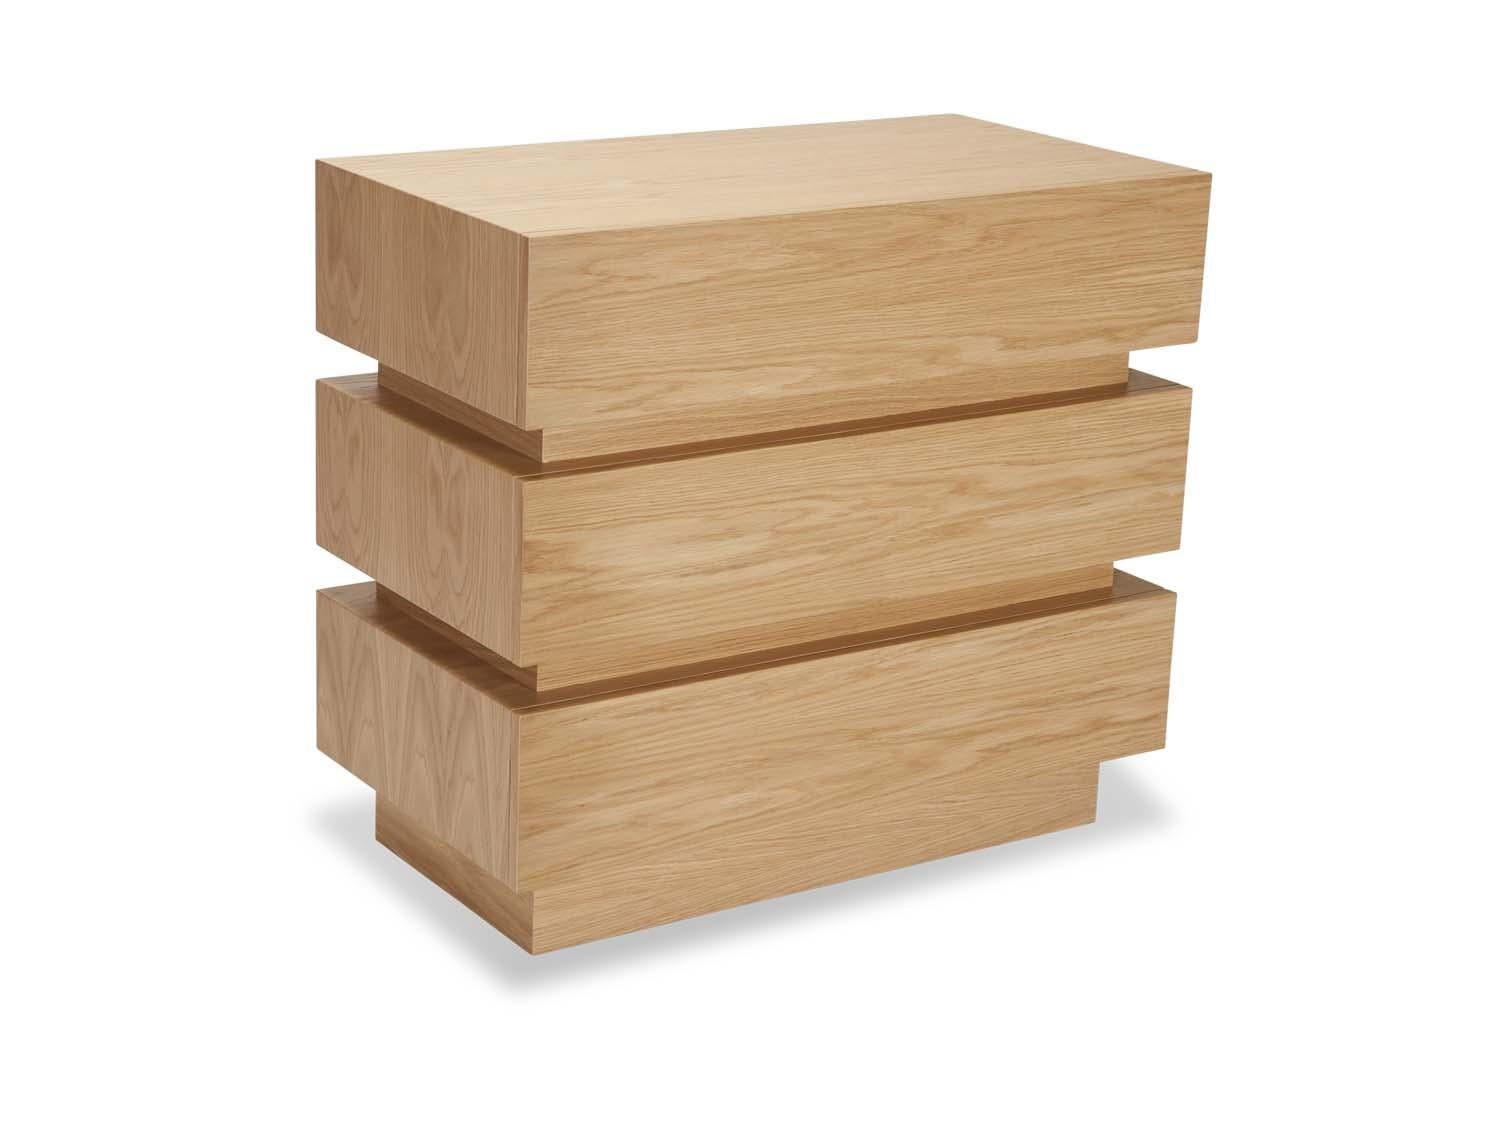 Die Stapelbox-Truhe ist eine größere, modifizierte Version der Stapelbox-Nachtkommode. Das Möbelstück verfügt über drei Schubladen und einen Einsatz, der mit einer Messingbeschichtung versehen werden kann. Erhältlich in amerikanischem Nussbaum,